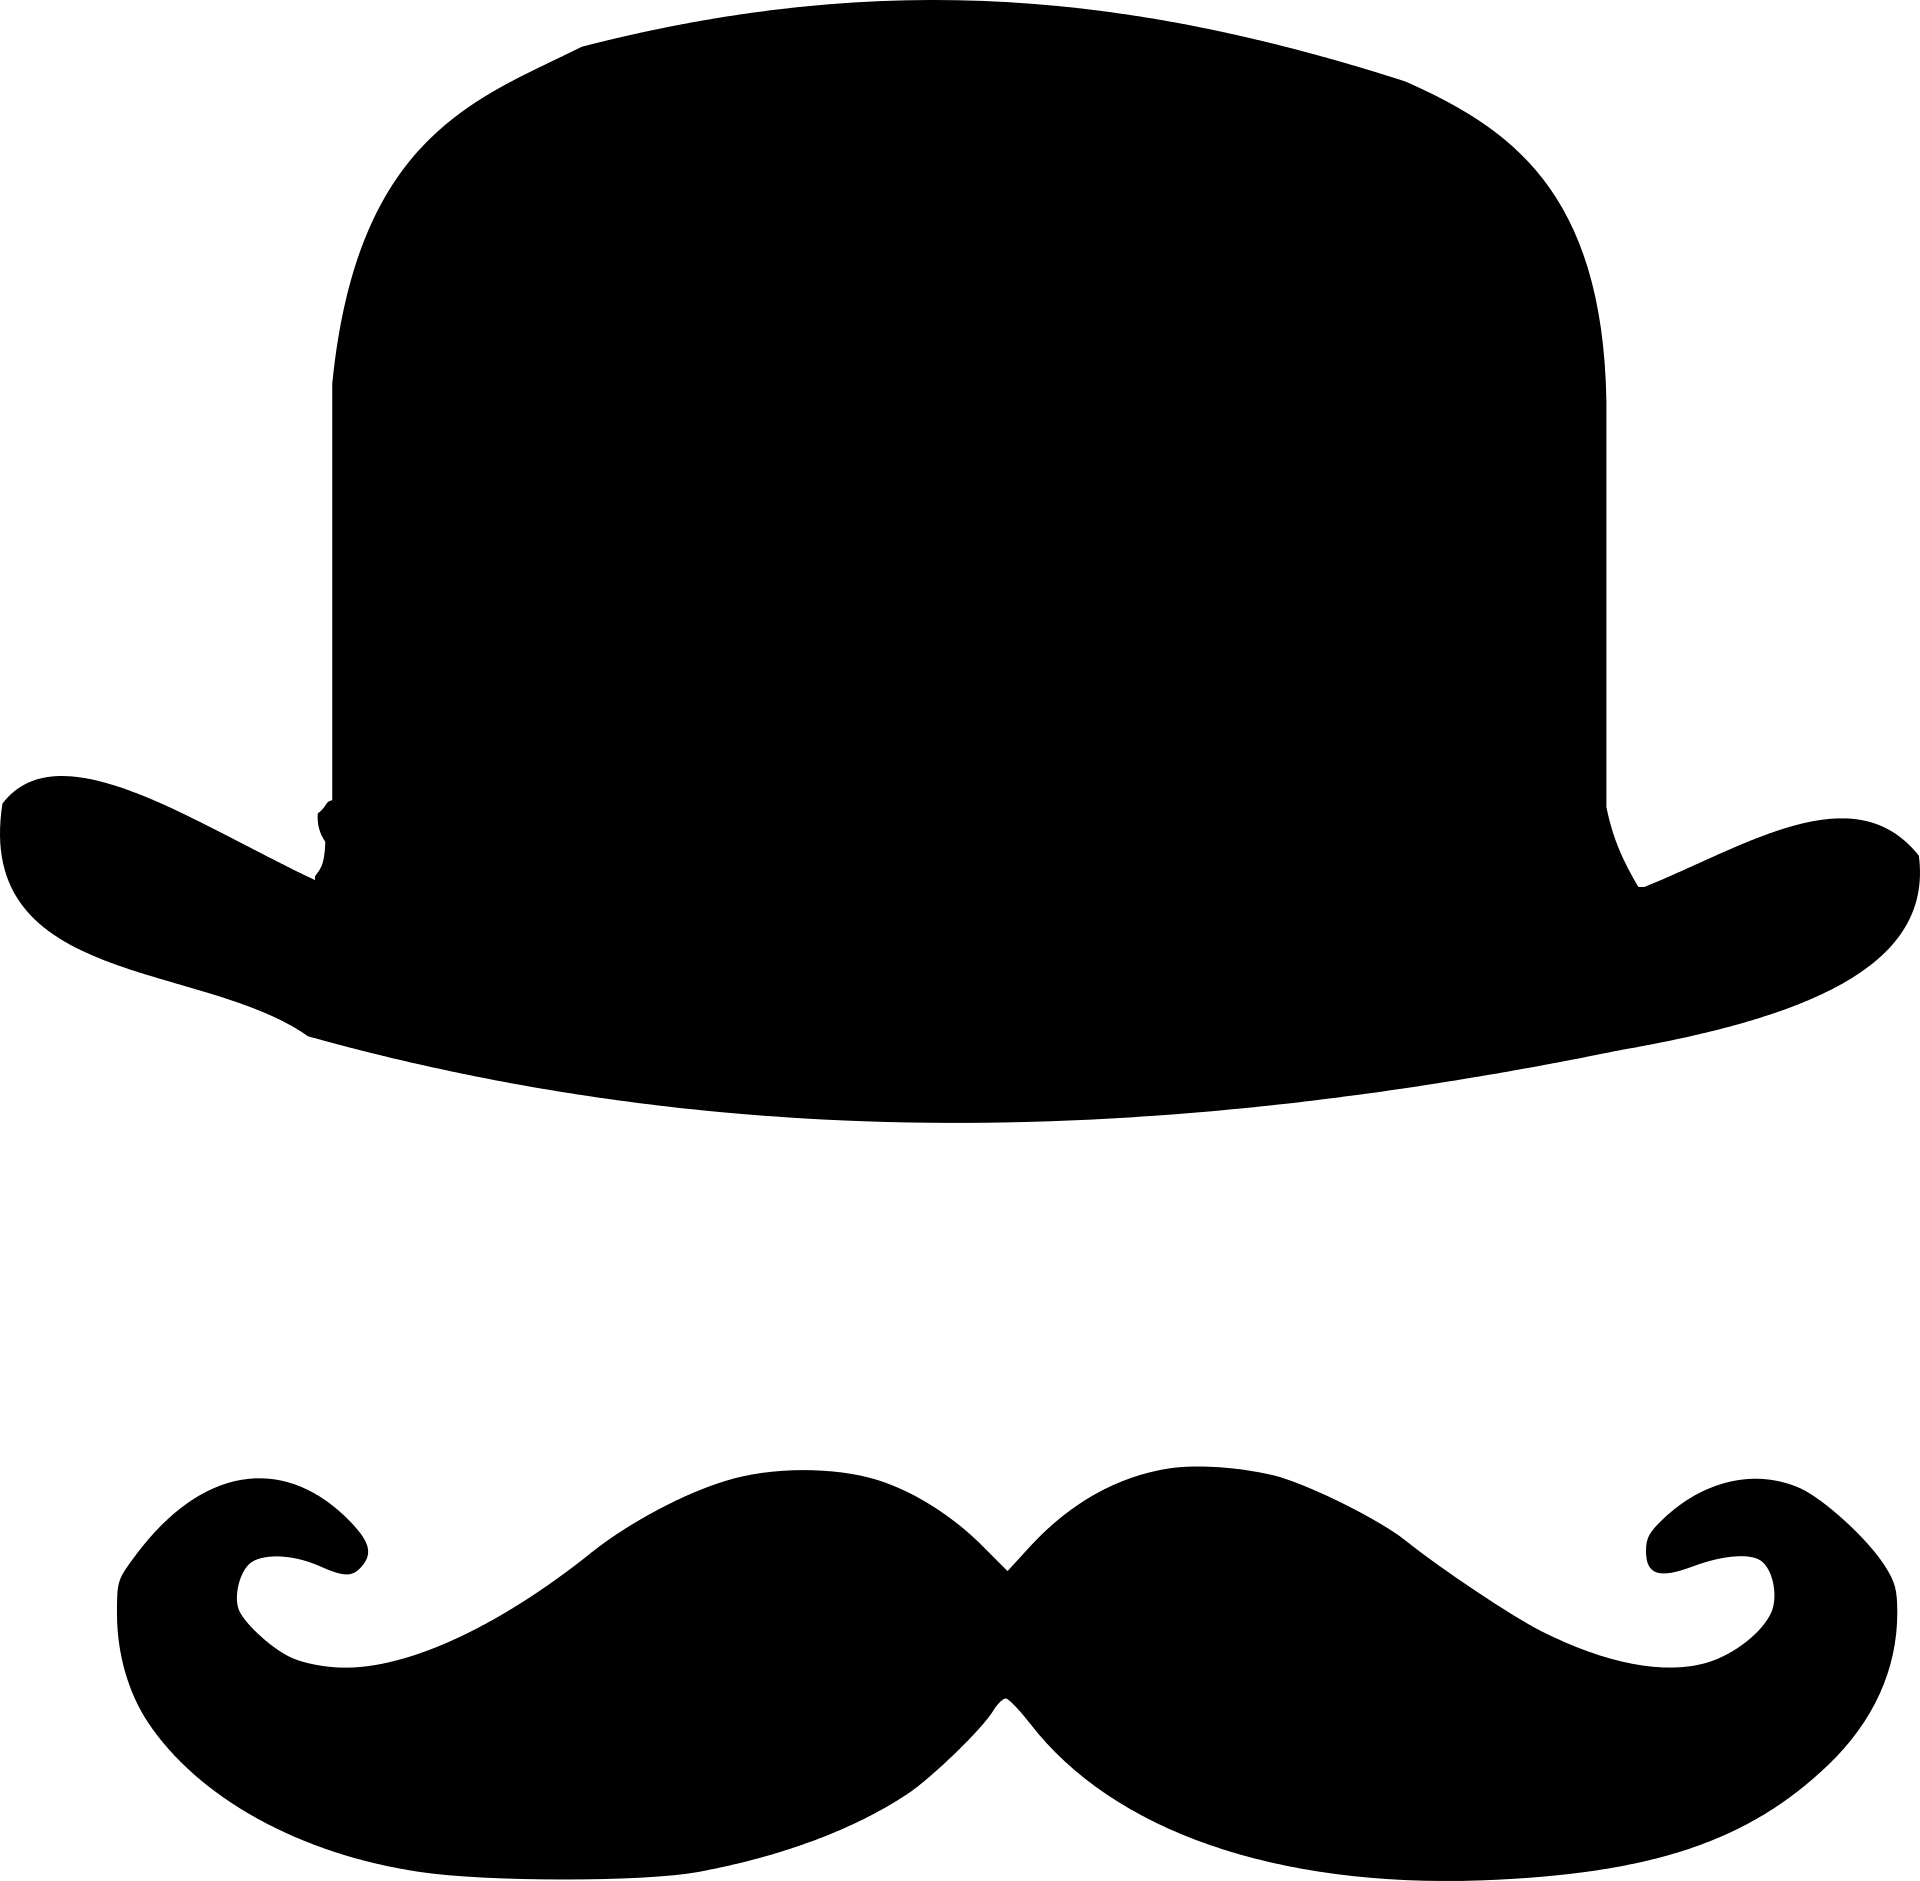 Gracho Marx Lunettes Vecteur PNG Image de limage